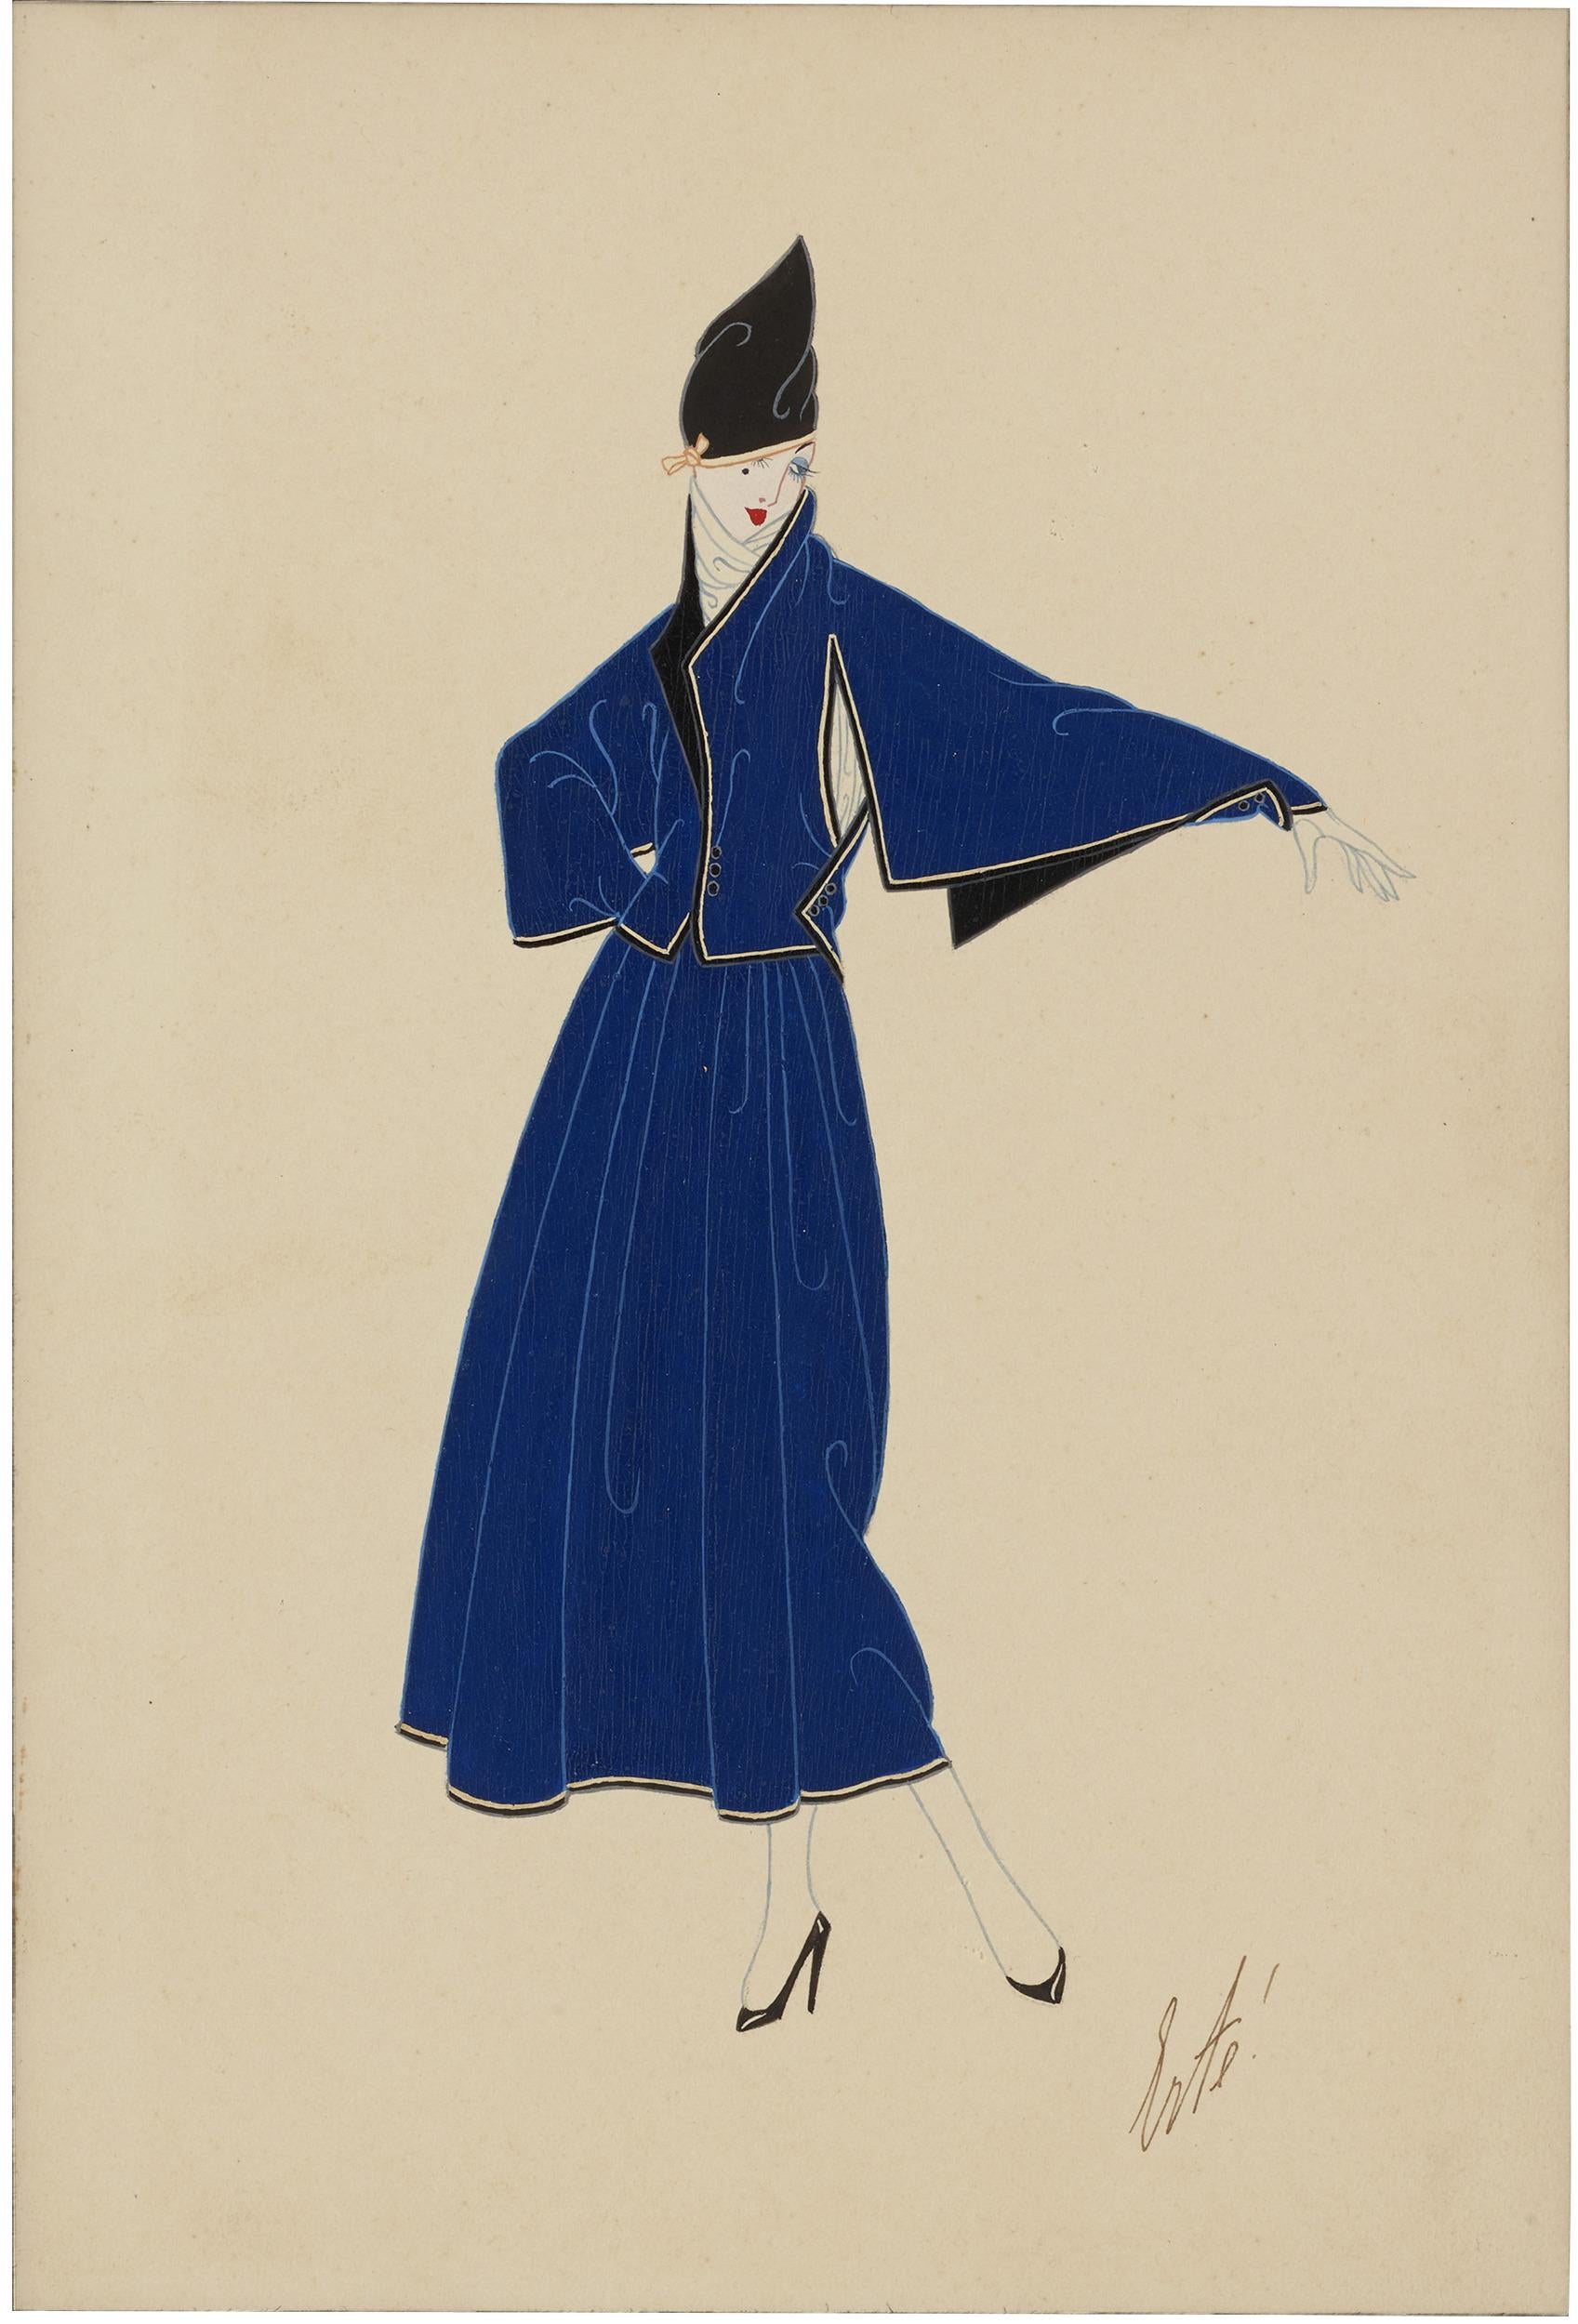 Erté (Romain de Tirtoff)
1892-1990  Russisch-Französisch
Costume tailleur (Maßanzug)

Signiert 